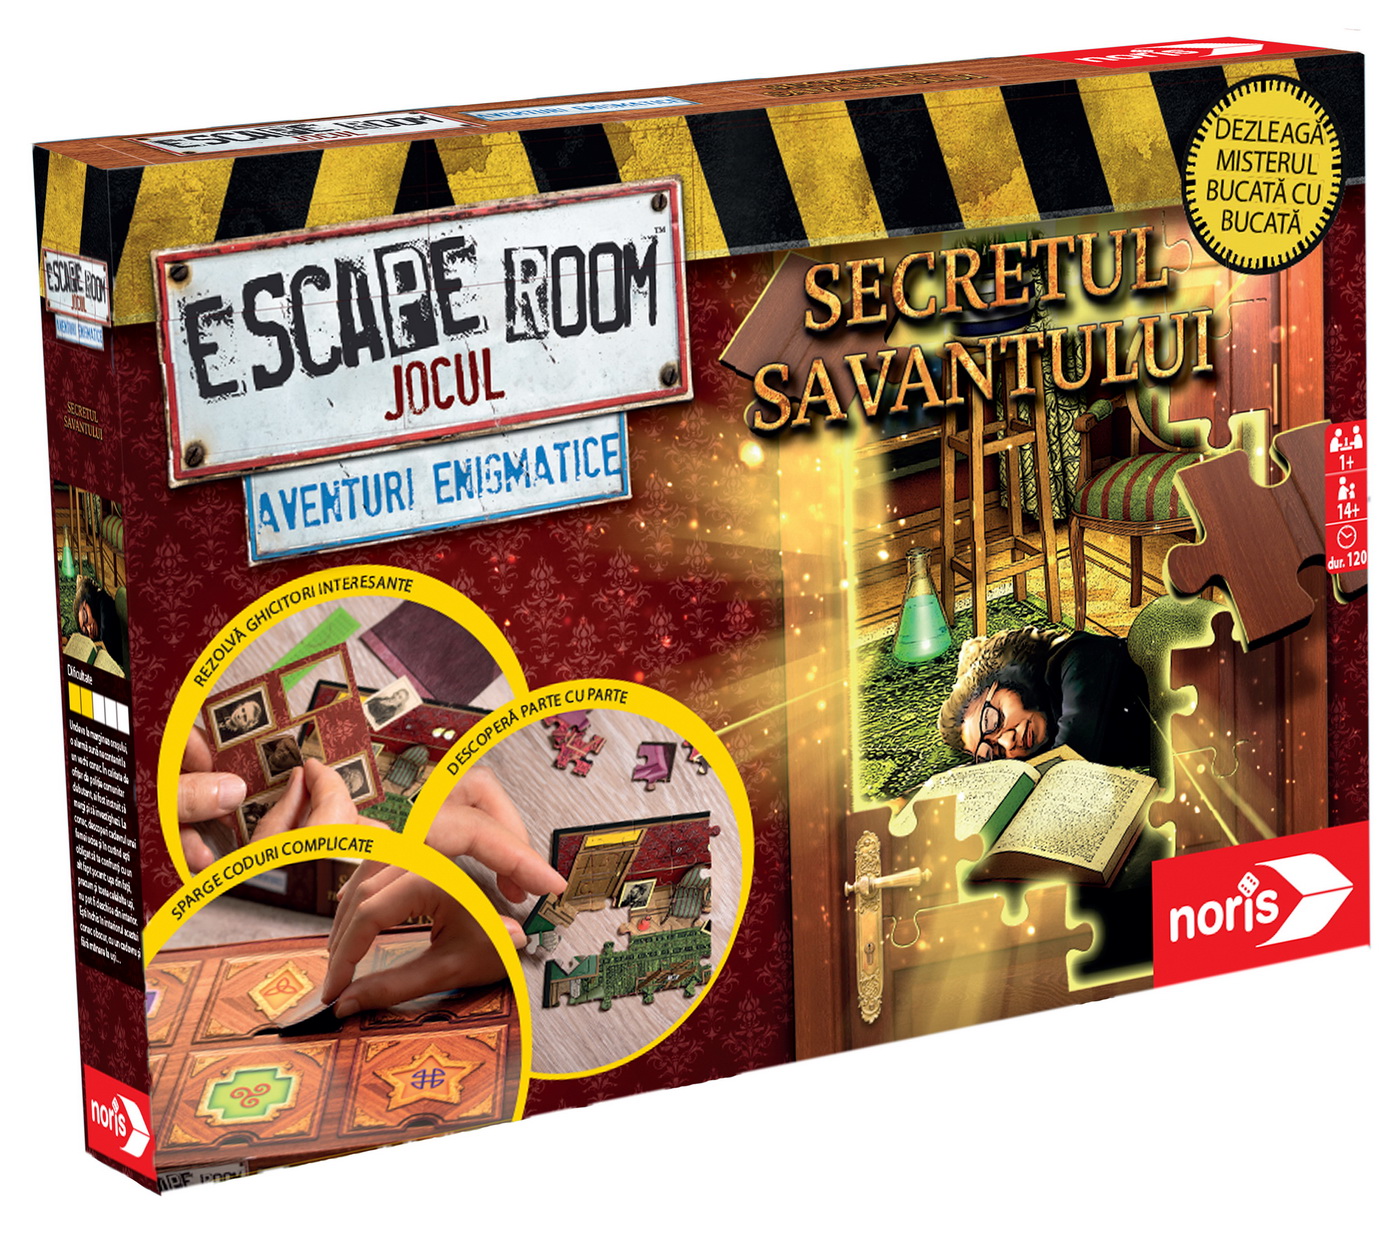 Escape Room Jocul - Secretul Savantului | Noris